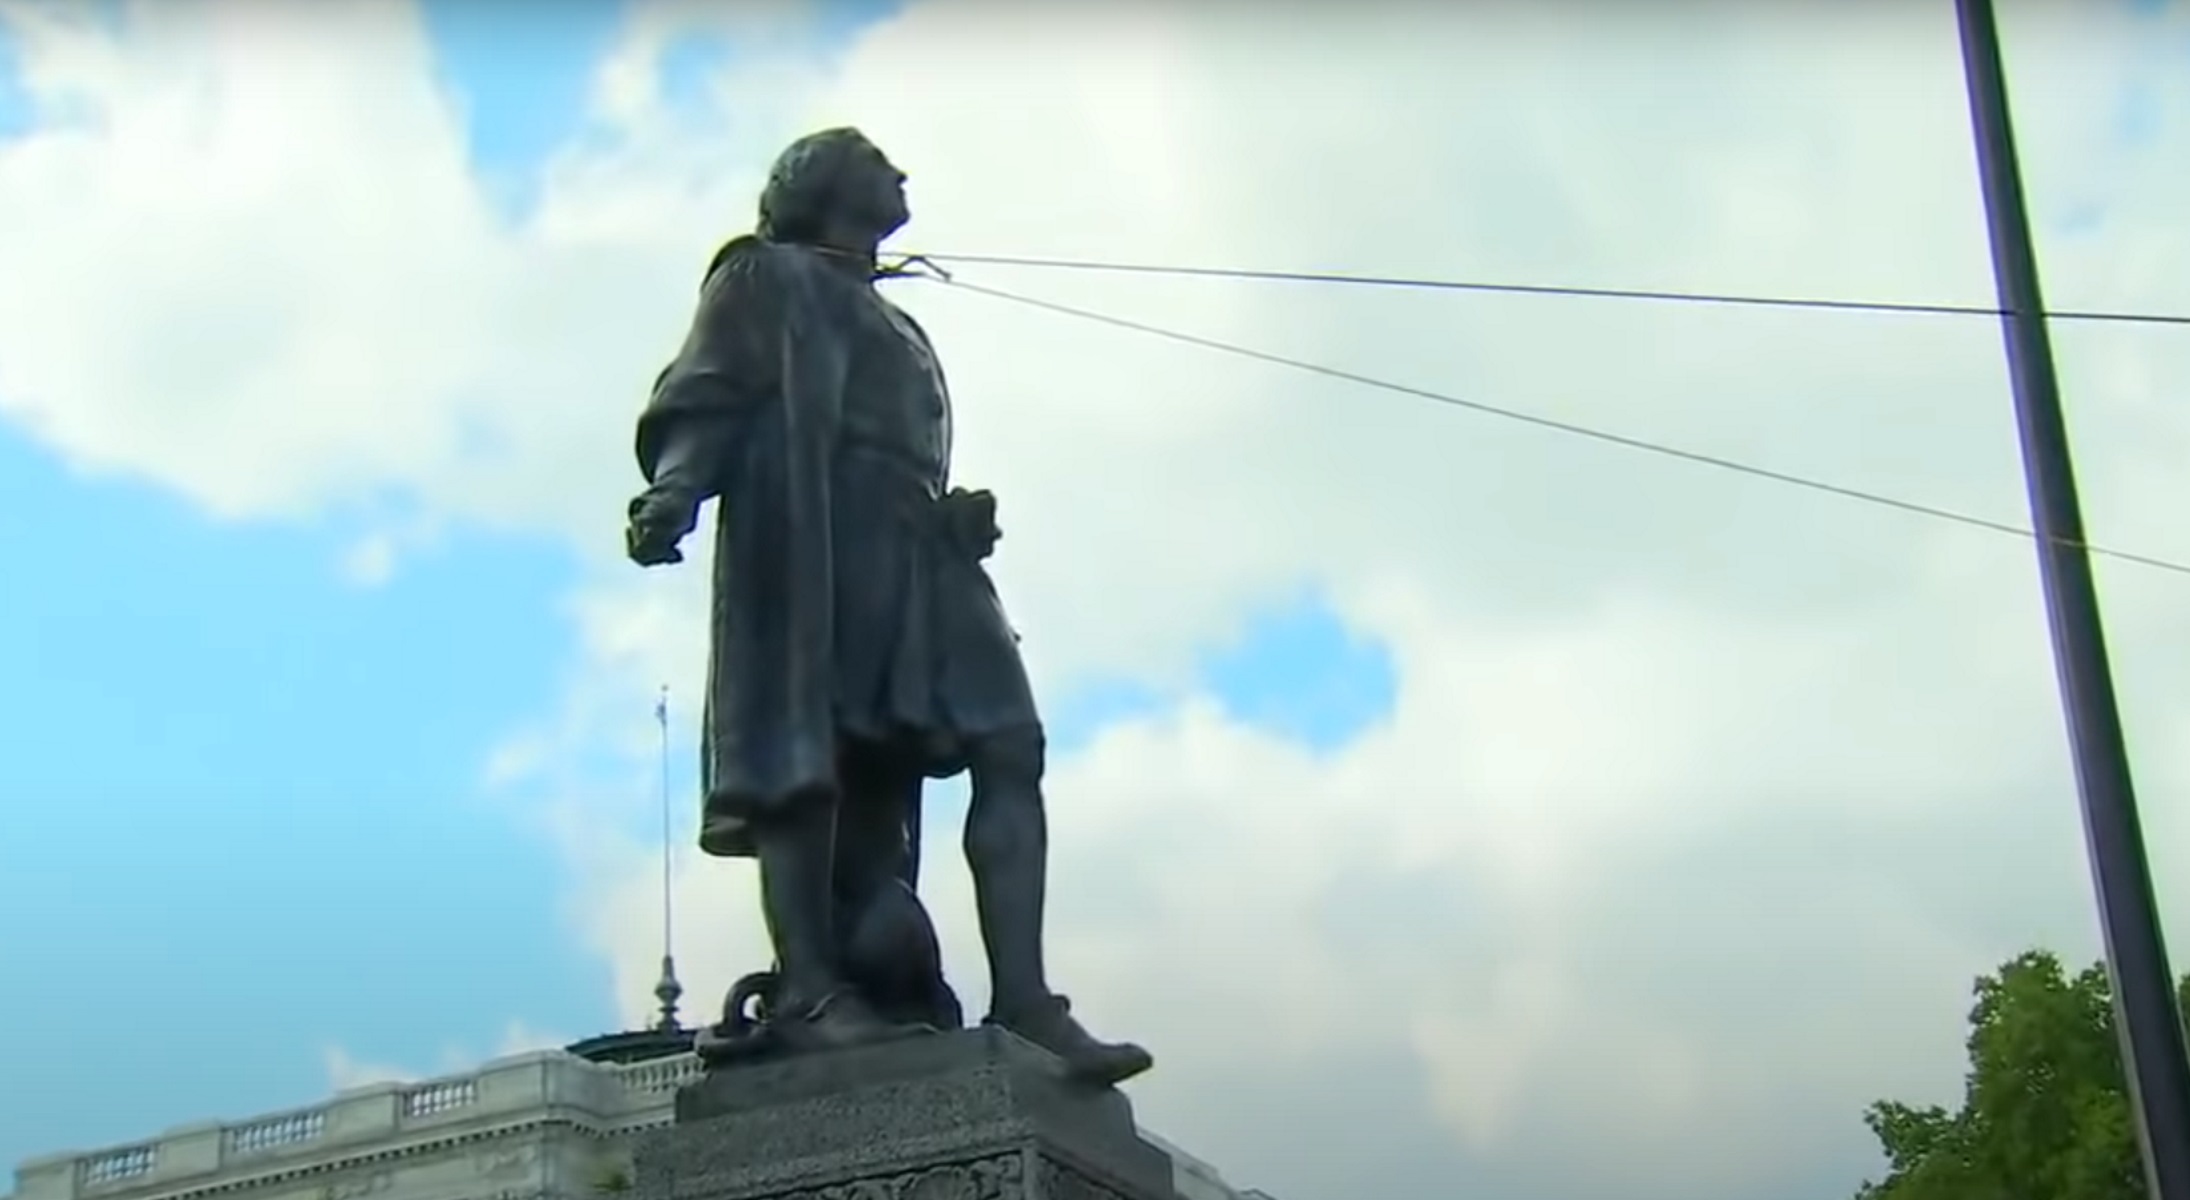 Μινεσότα: Μαζεύουν υπογραφές για αντικατάσταση αγάλματος του Χριστόφορου Κολόμβου με αυτό του Prince